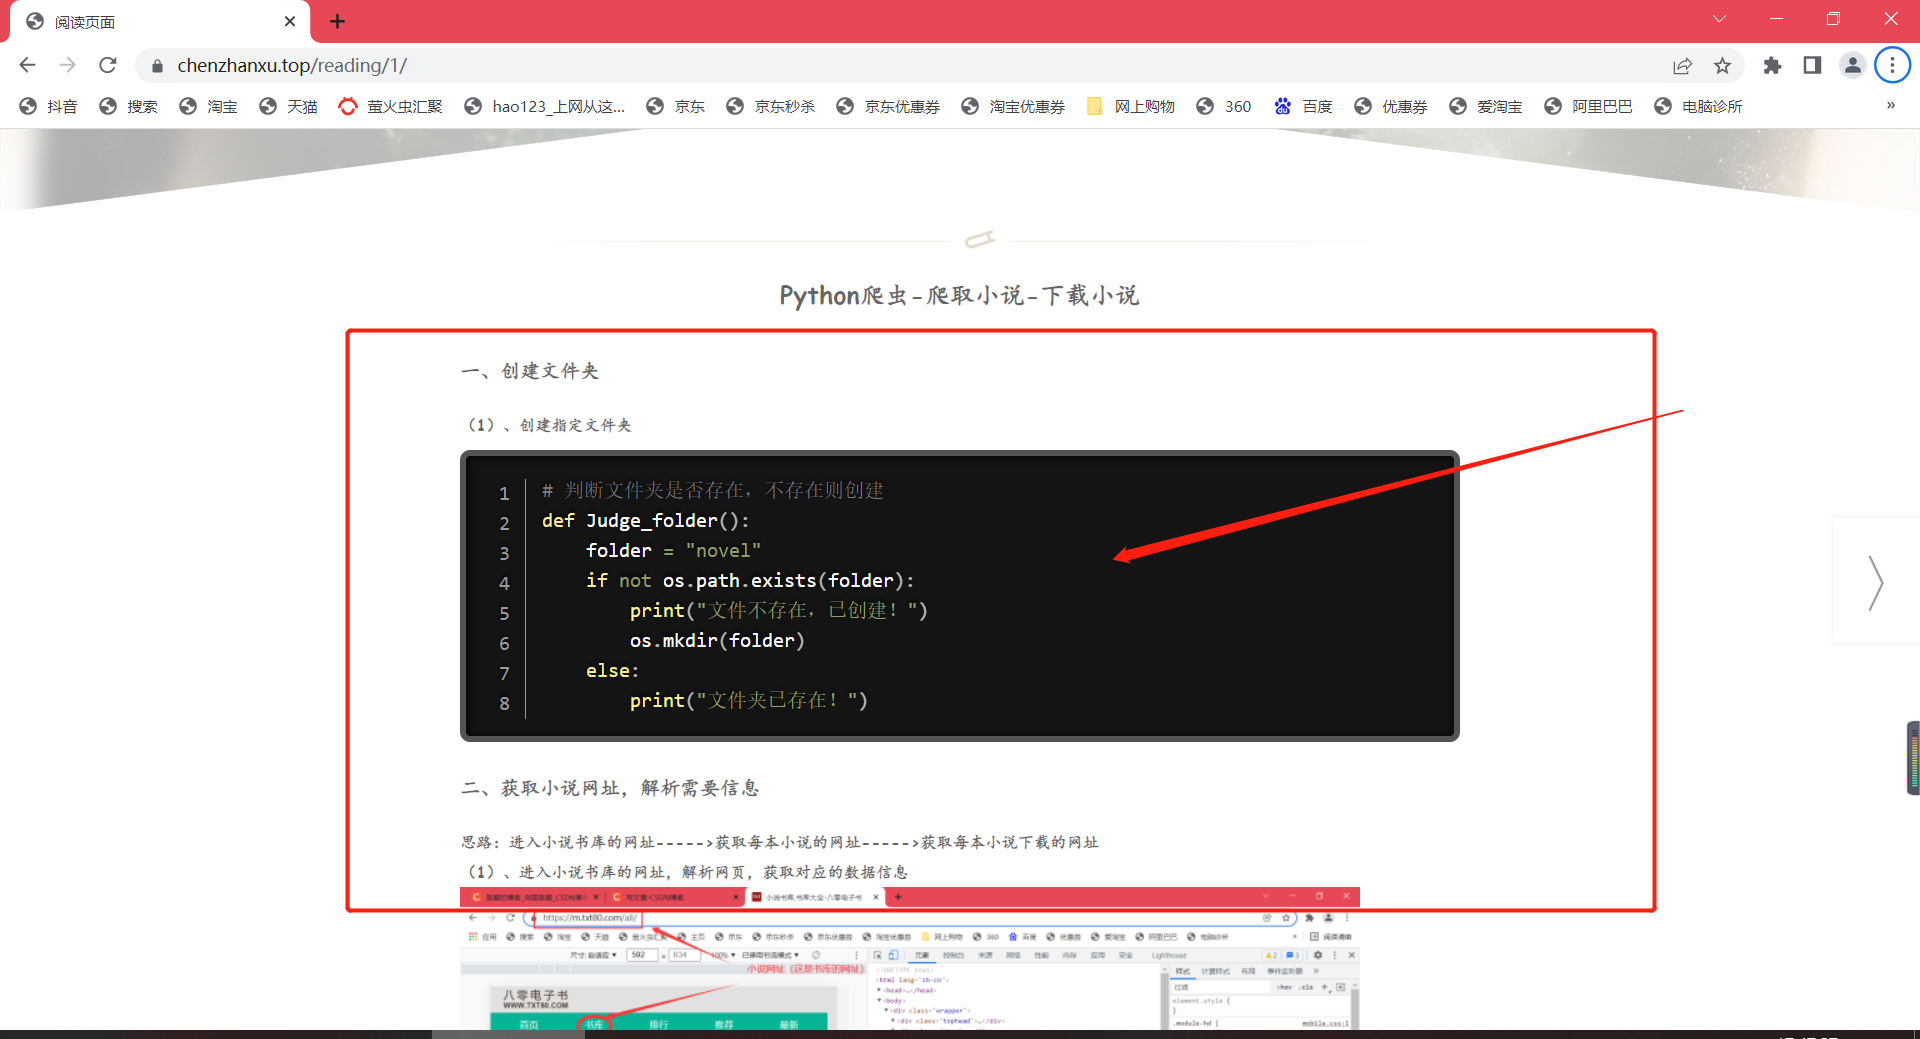 ckeditor4 代码插件亮度与HTML显示代码的亮度问题